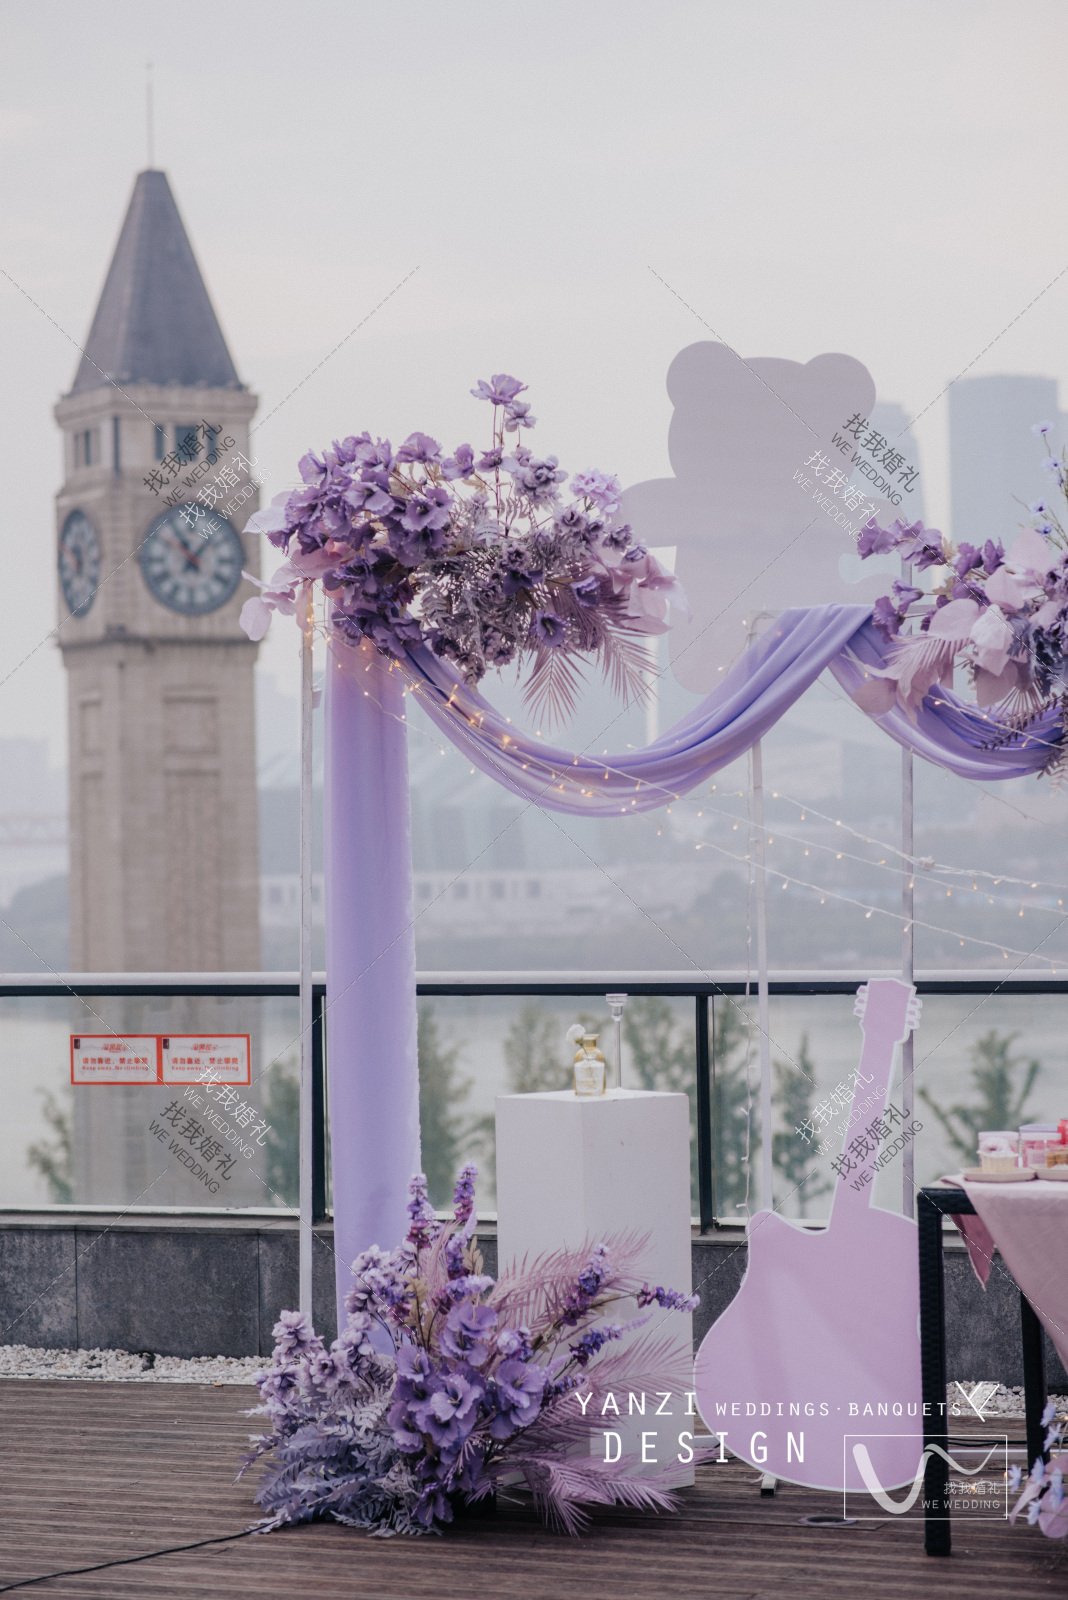 《Serendipity&lilac》不期而遇的美好紫色主题室内韩式现场布置图片_效果图_策划价格-找我婚礼